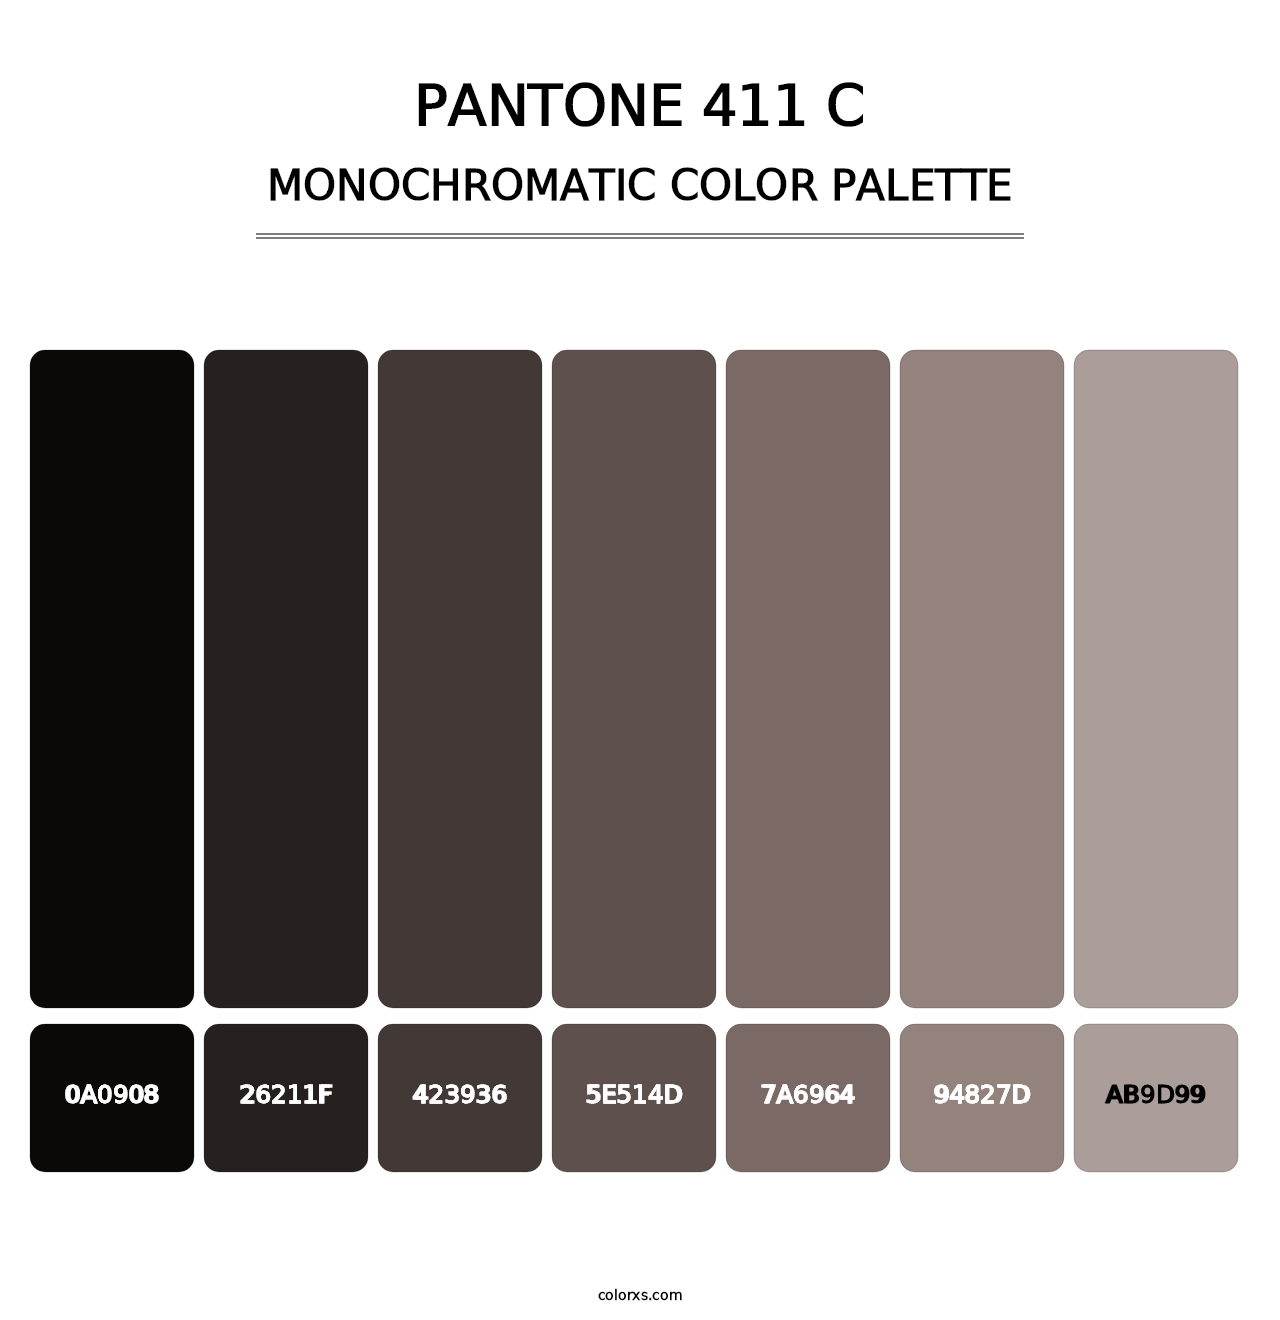 PANTONE 411 C - Monochromatic Color Palette